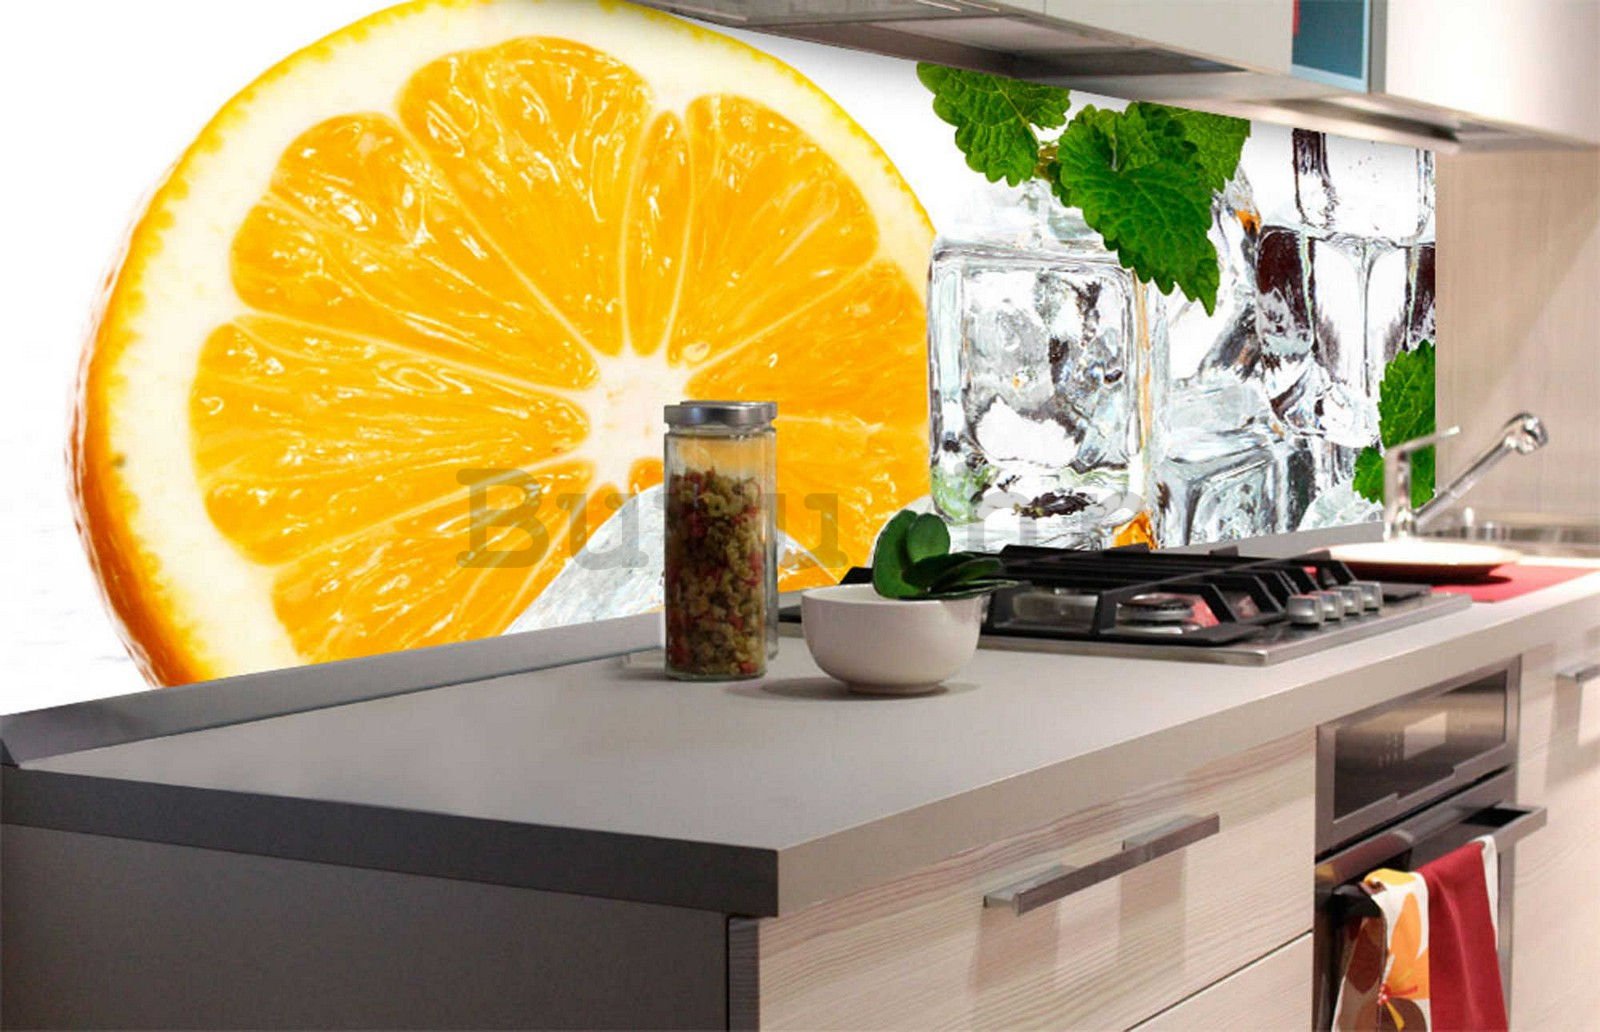 Samoljepljiva periva foto tapeta za kuhinju - Limun i kockice leda, 180x60 cm